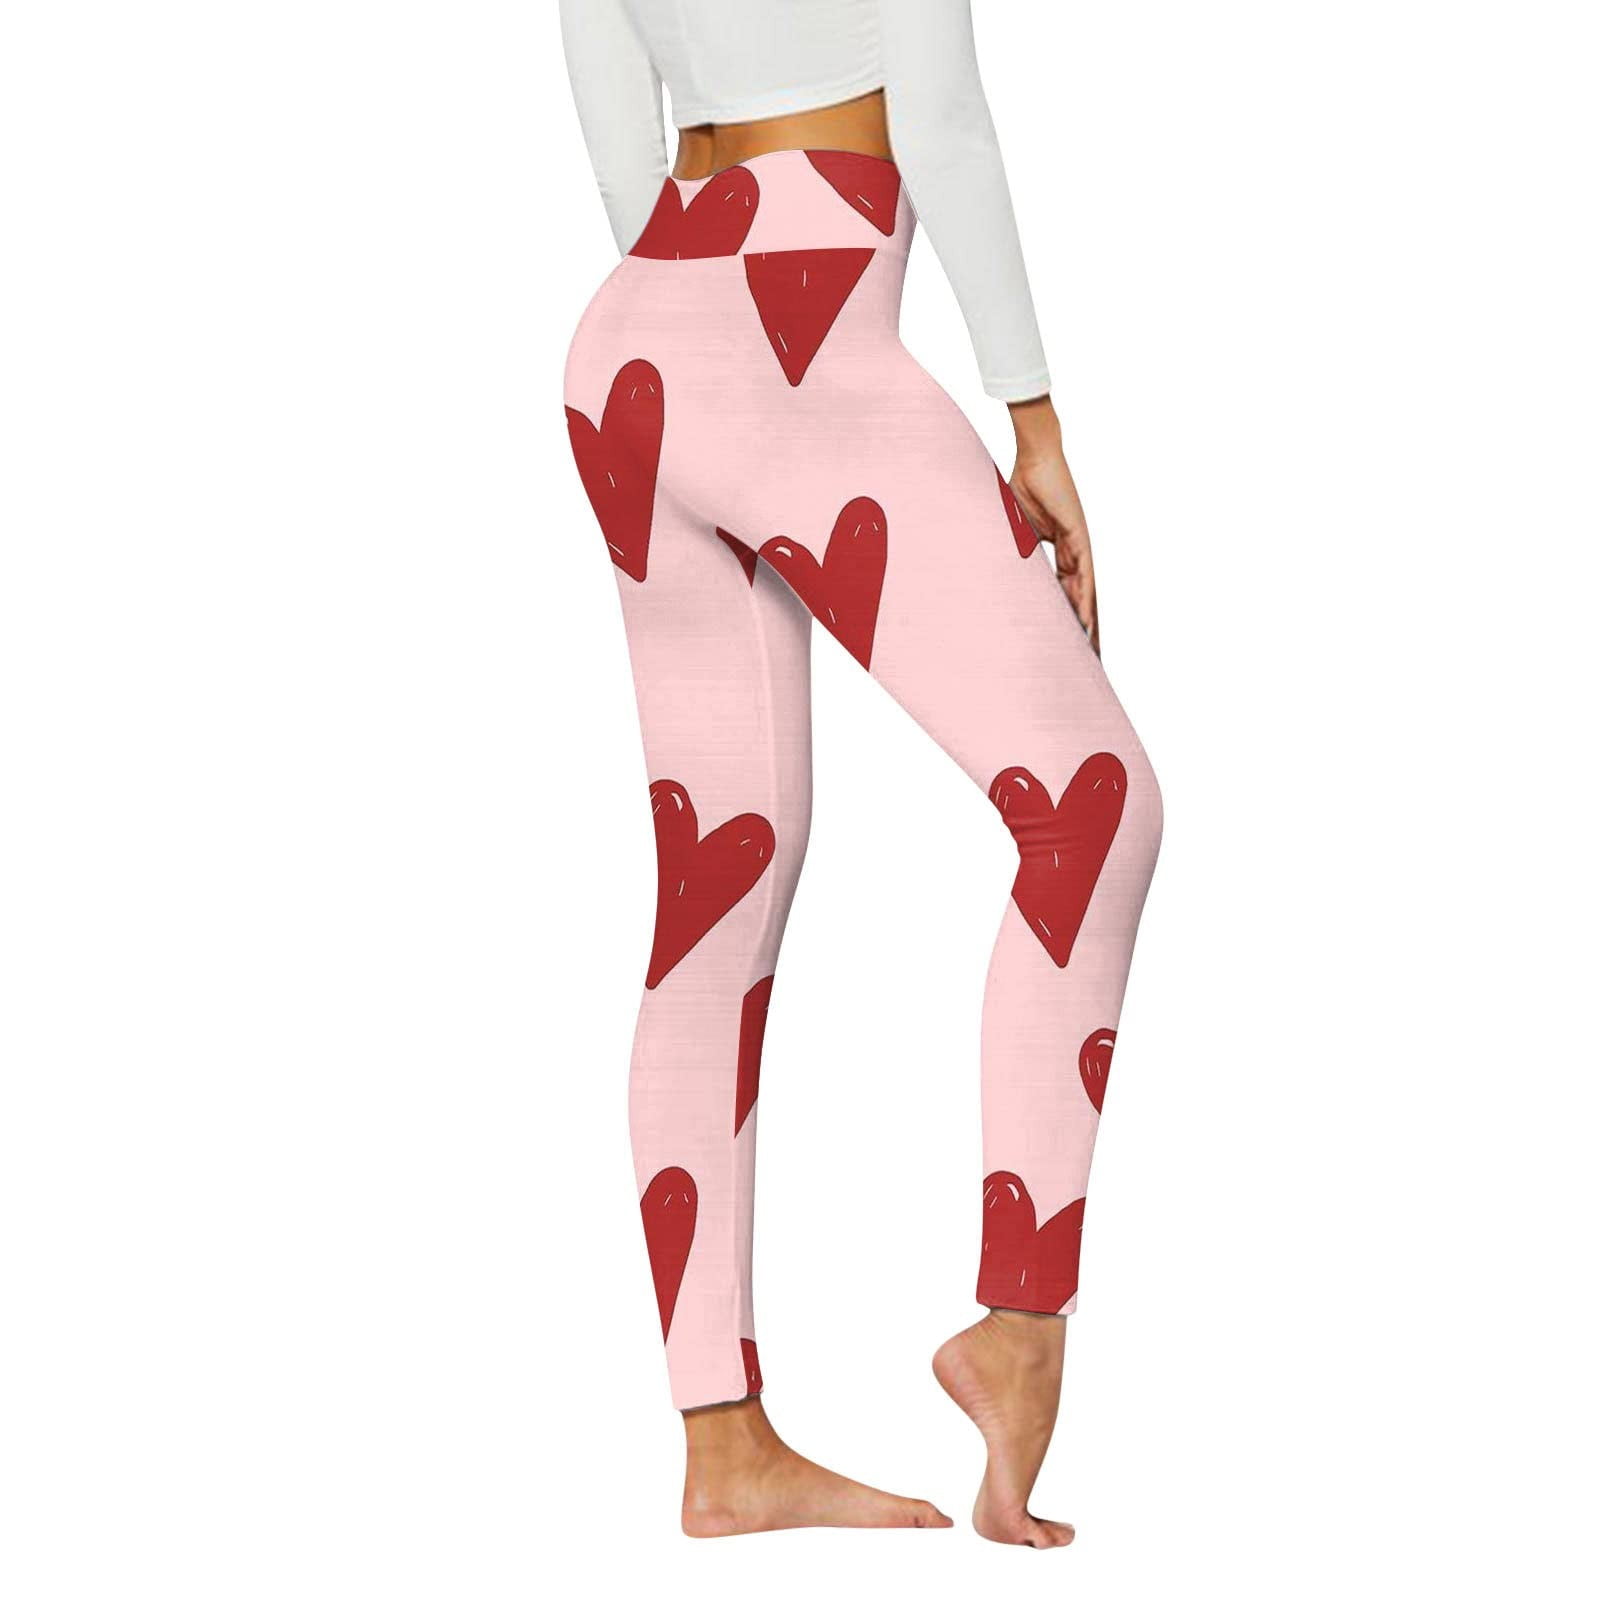 MELDVDIB Bootcut Yoga Pants - Flare Leggings for Women High